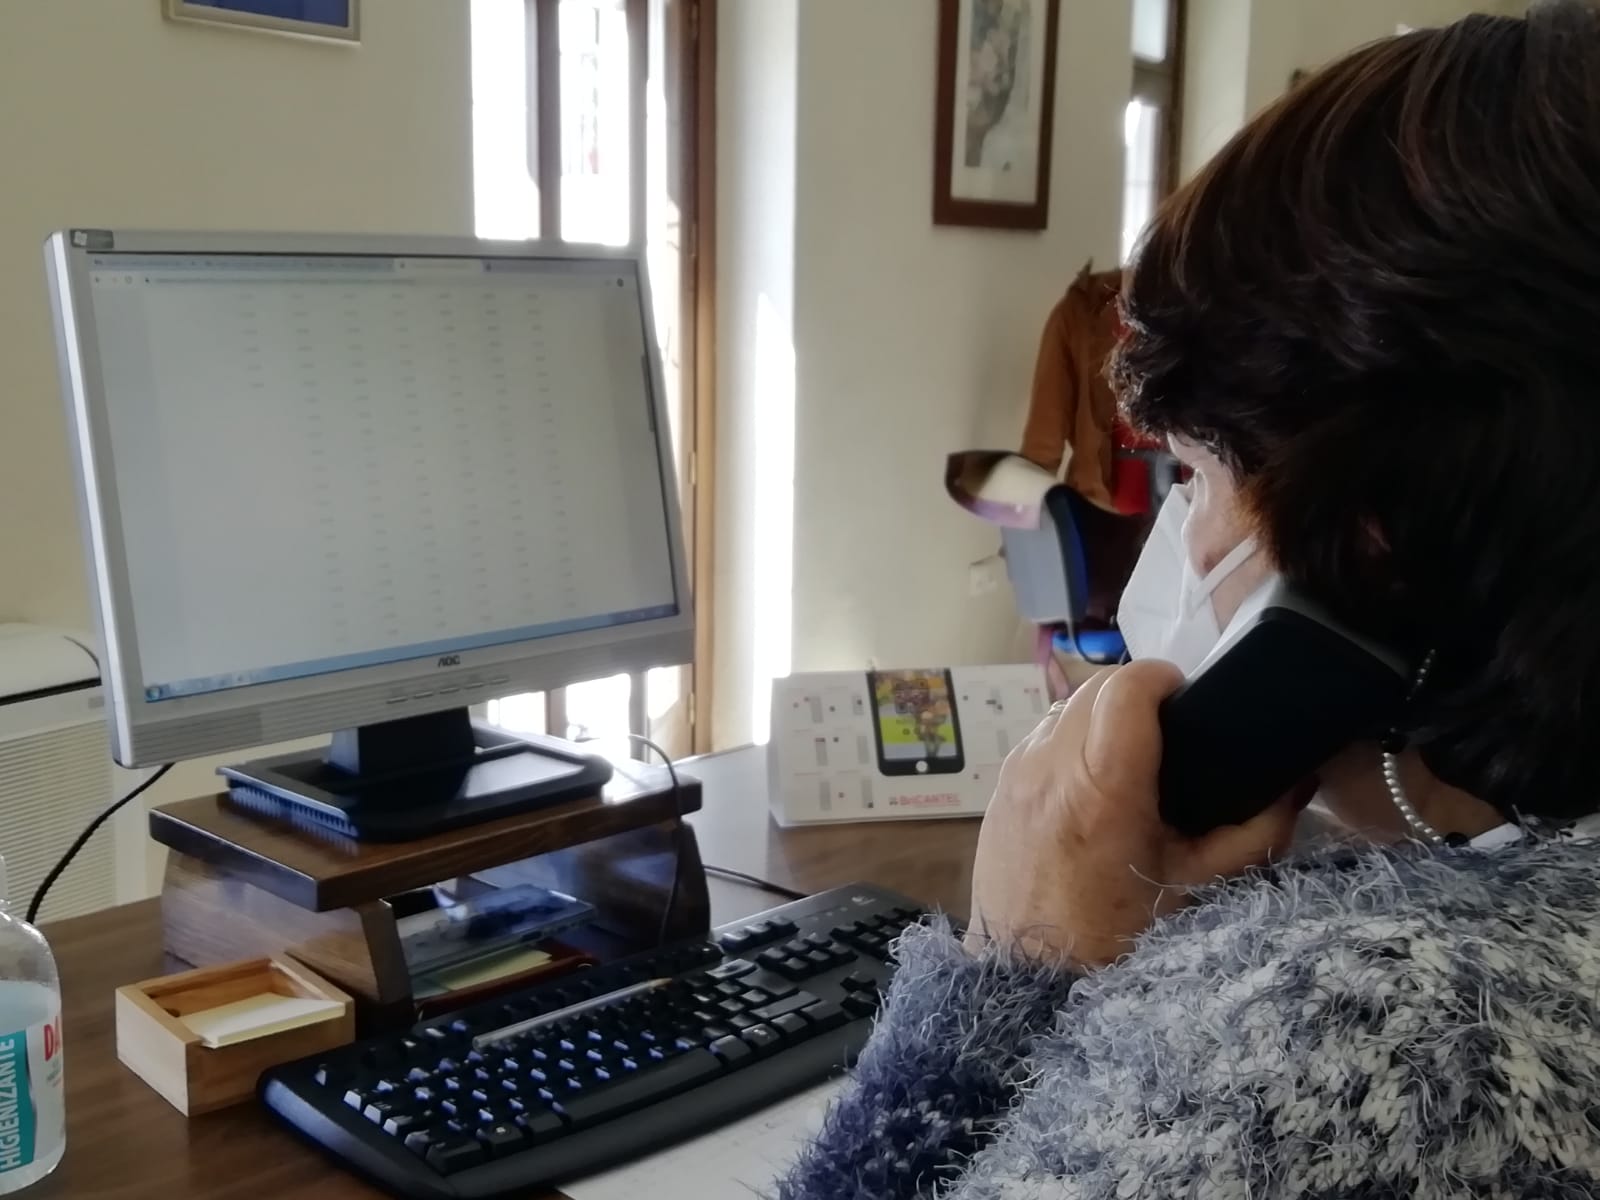 El servicio de atención telefónica del ayuntamiento registra una media de 3.500 llamadas al mes